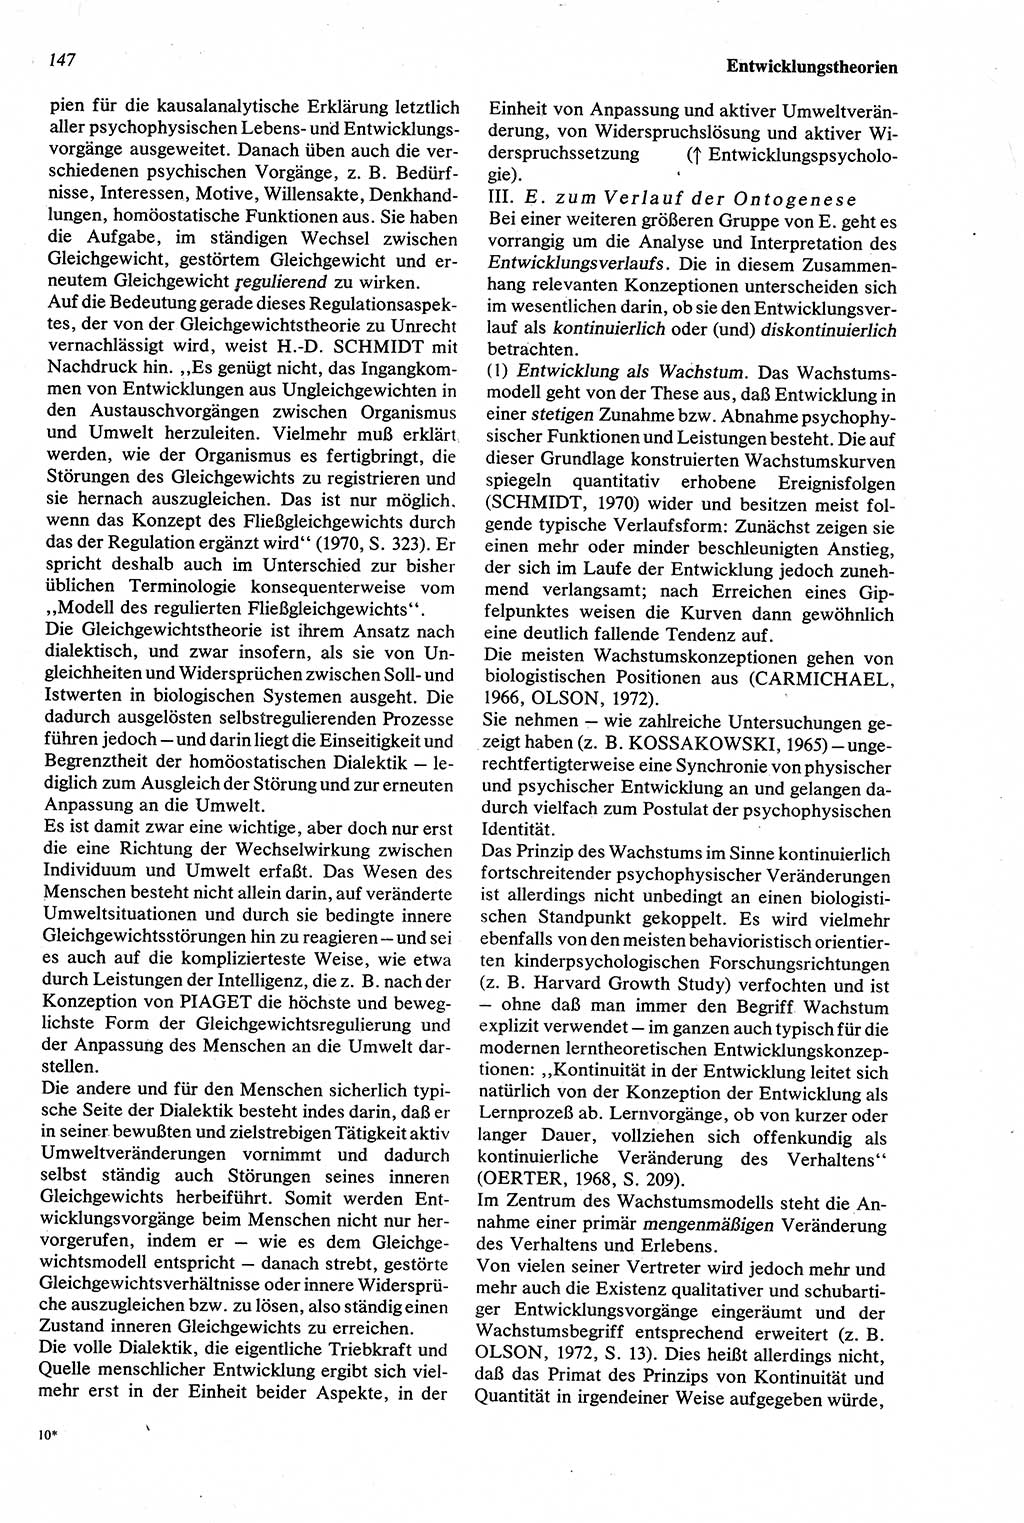 Wörterbuch der Psychologie [Deutsche Demokratische Republik (DDR)] 1976, Seite 147 (Wb. Psych. DDR 1976, S. 147)